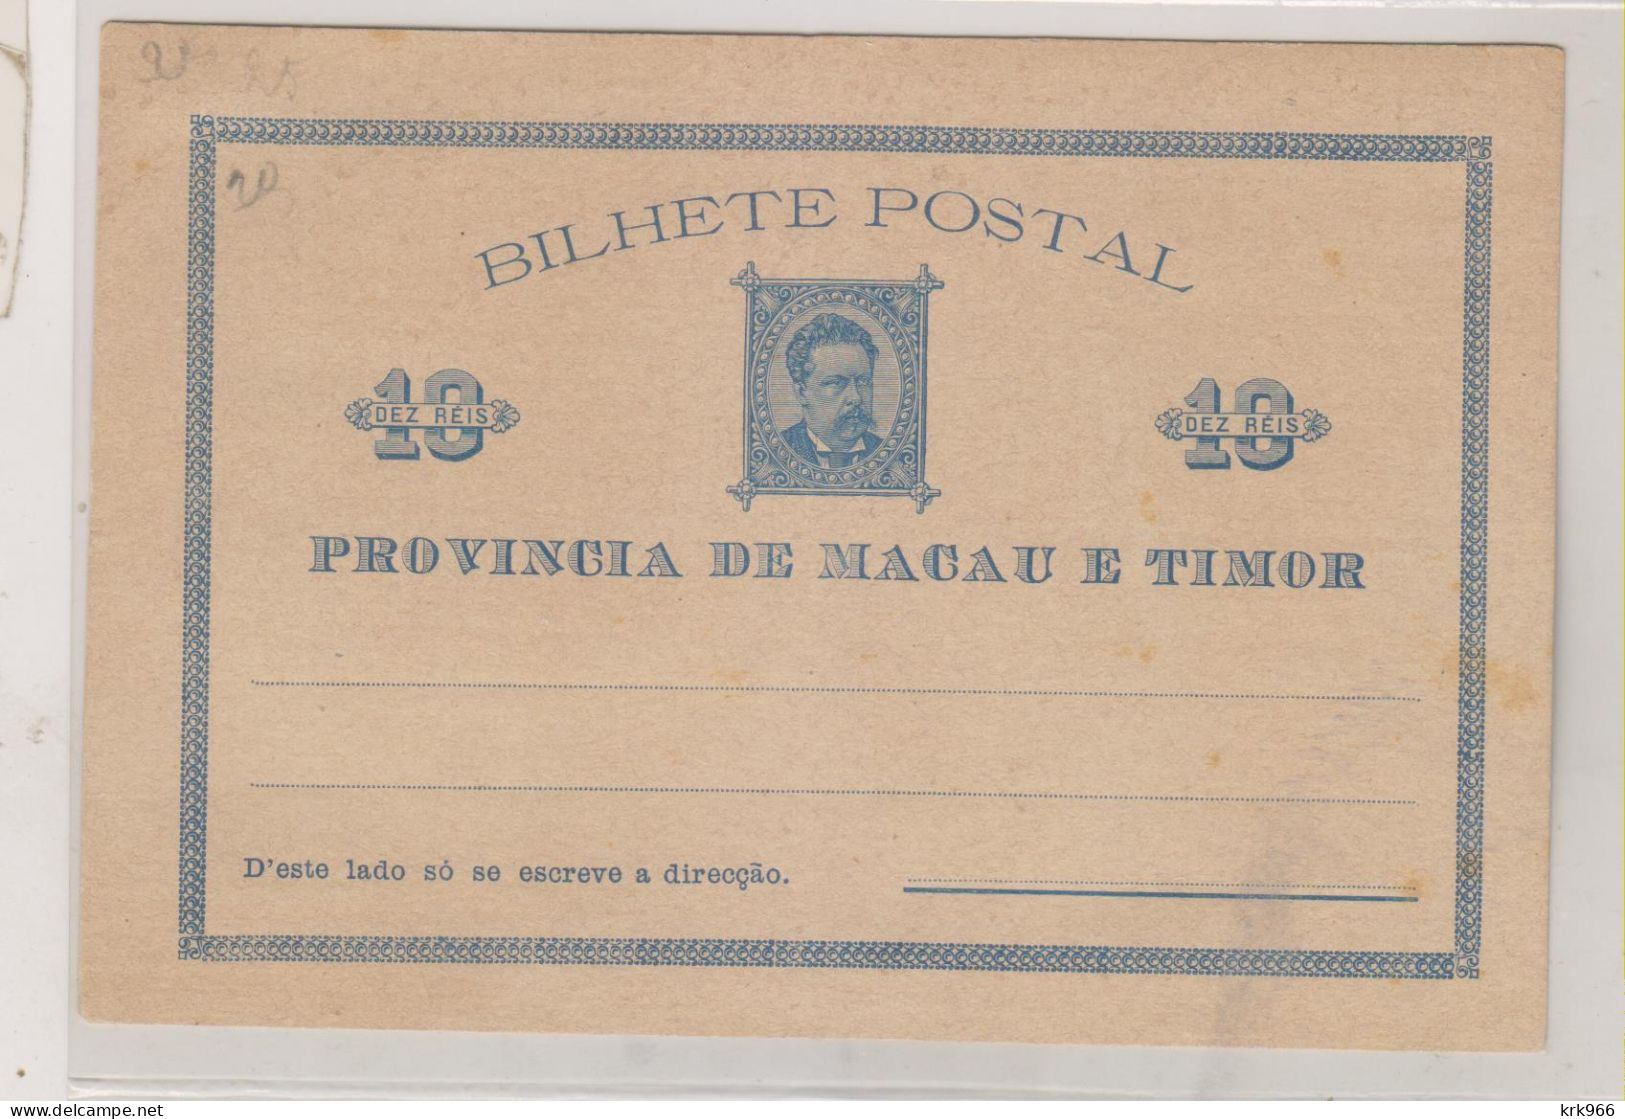 MACAU TIMOR Nice Postal Stationery Unused - Covers & Documents